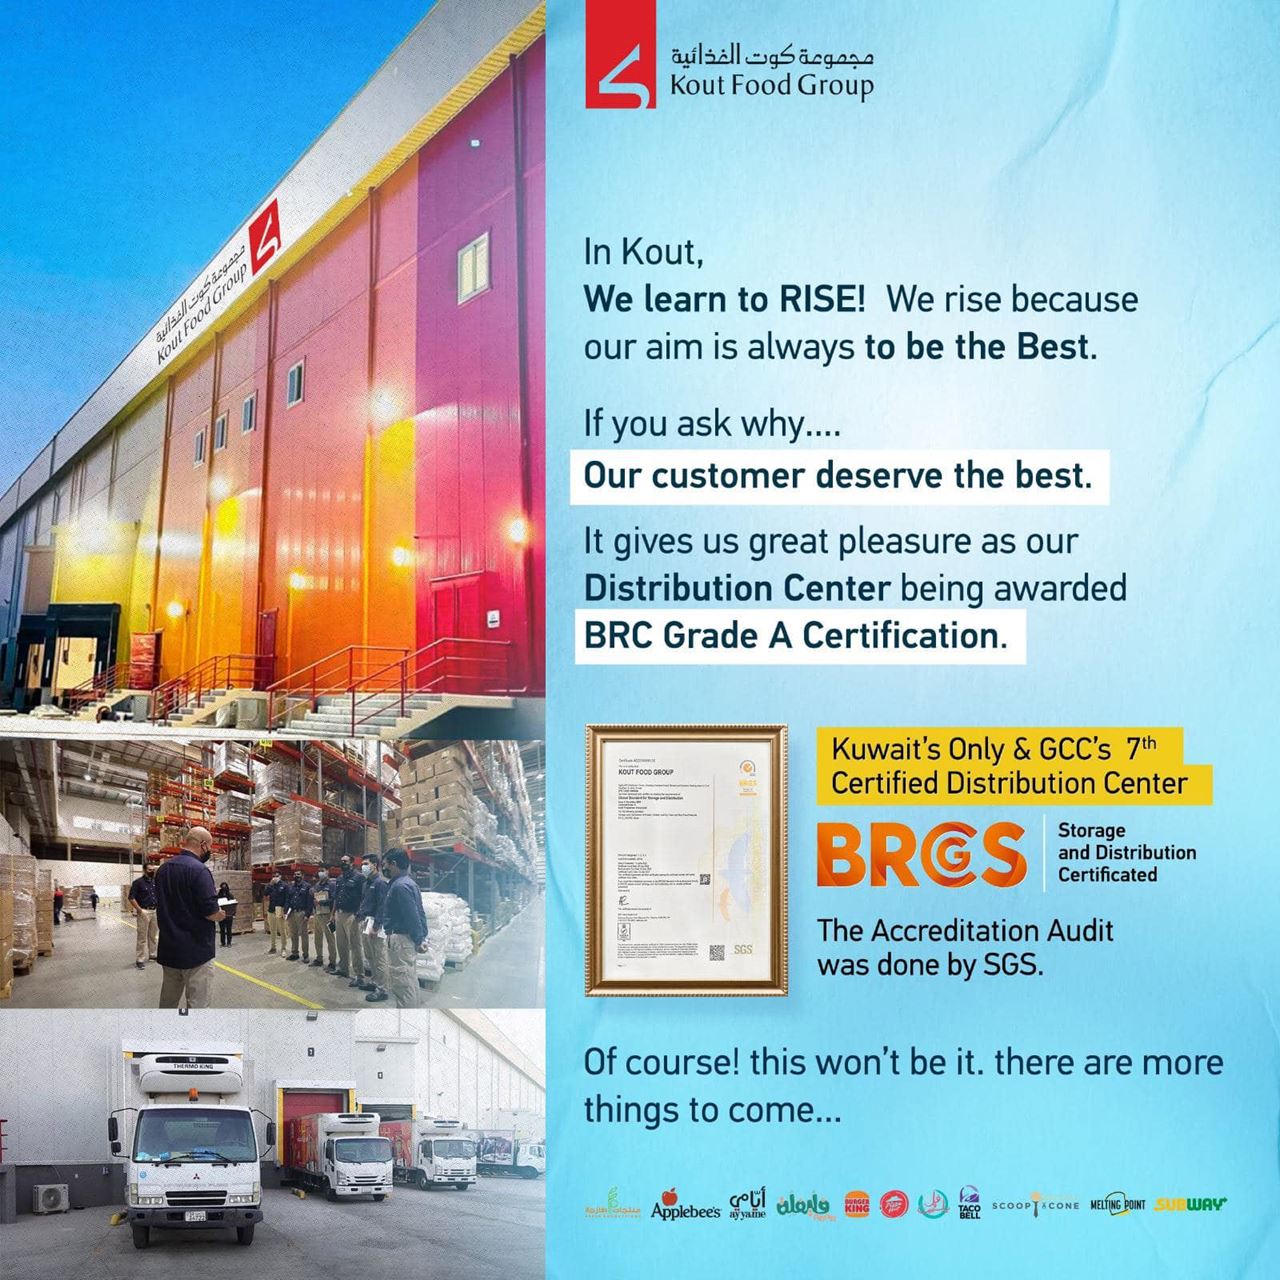 مجموعة كوت الغذائية الأولى في الكويت تحصل على شهادة المعايير العالمية (BRCGS) لممارسات التخزين والتوزيع عالية الجودة